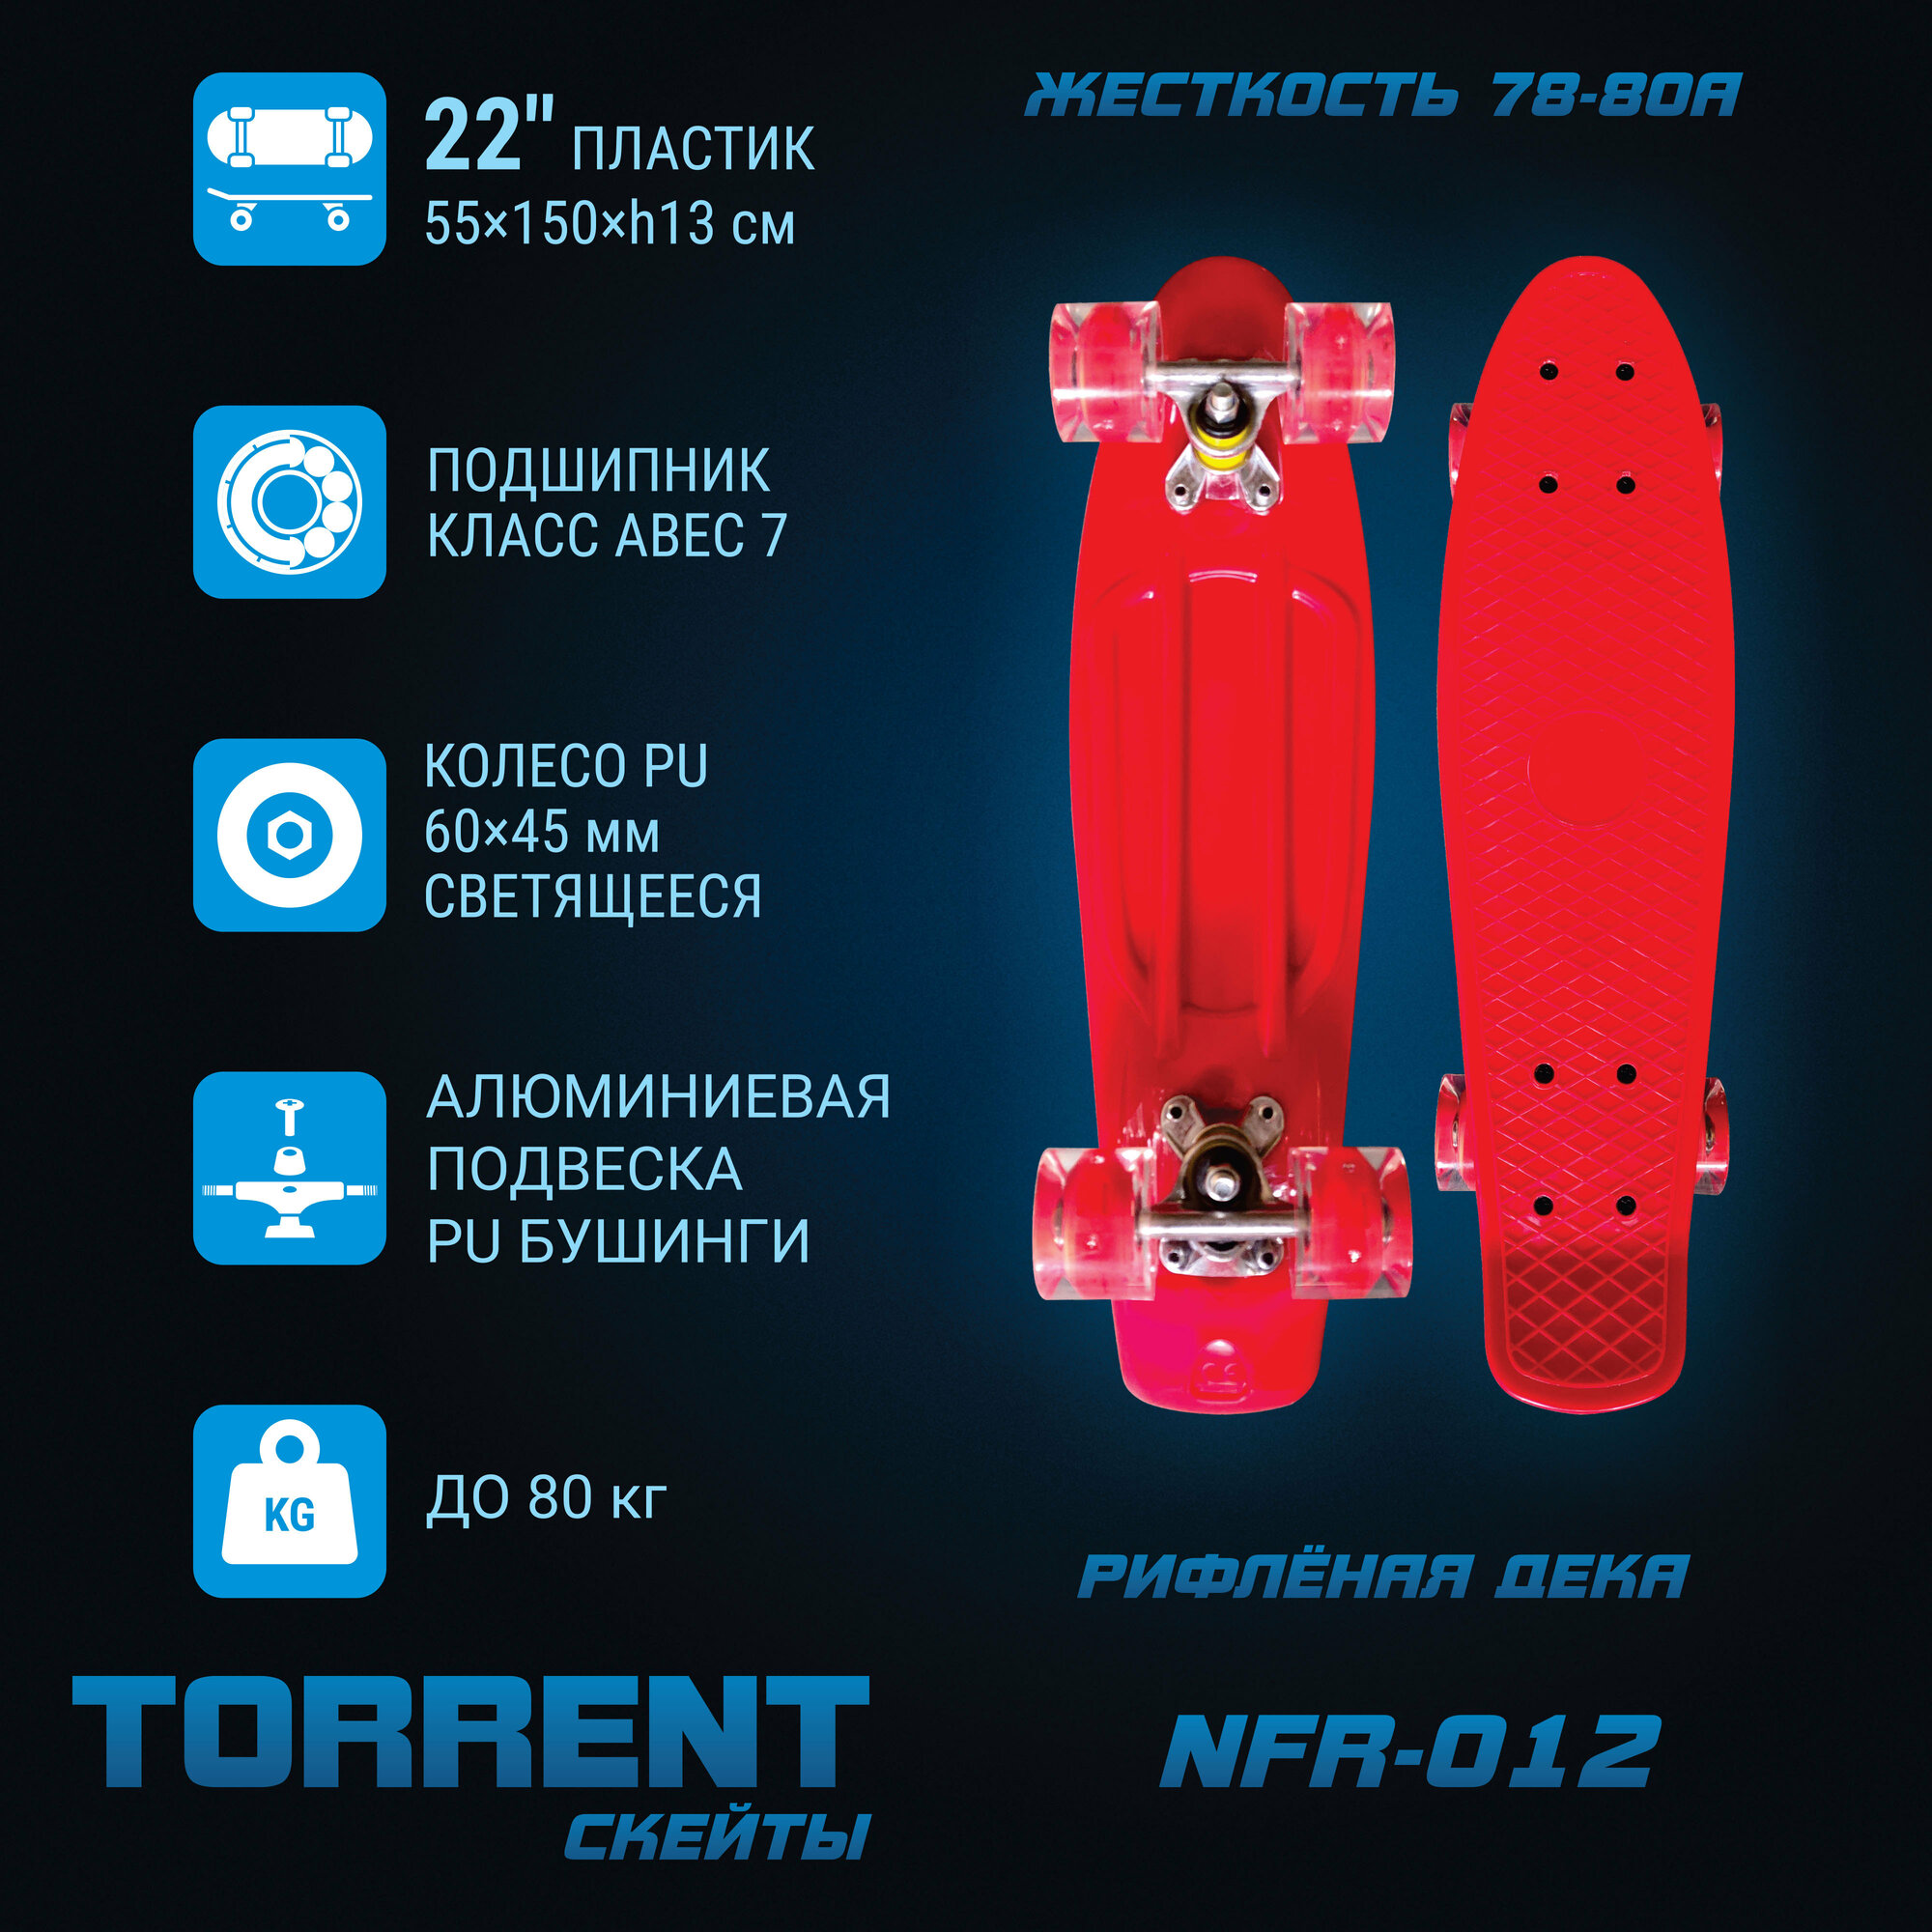 Скейтборд Torrent - фото №1